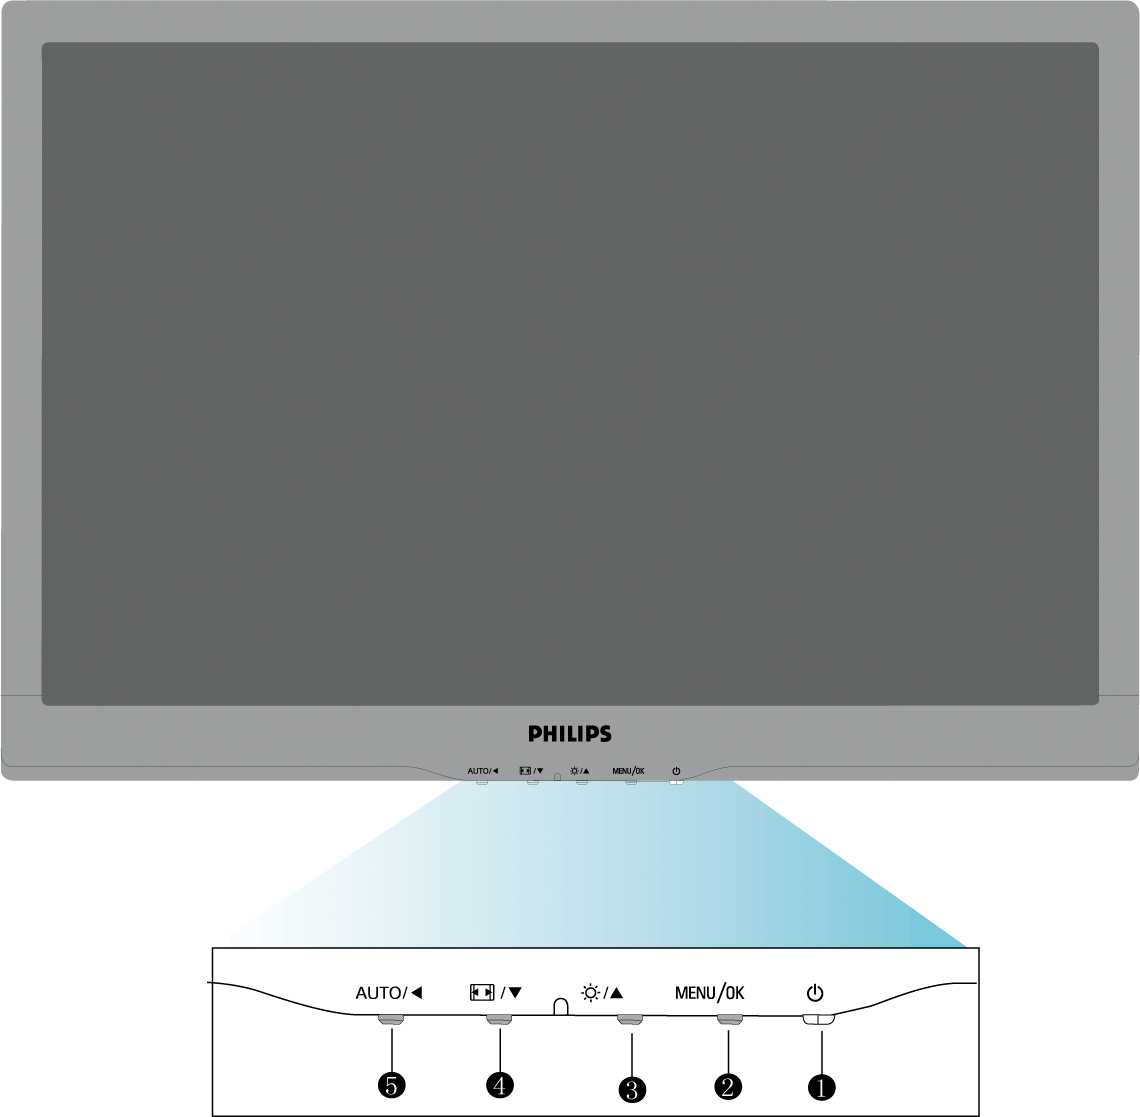 Installing Your LCD Monitor Elölnézeti termékleírás Csatlakoztatás a PC-hez A talpazat eltávolítása Kezdetek A teljesítmény optimalizálása Az LCD monitor telepítése Elölnézeti termékleírás 1 A